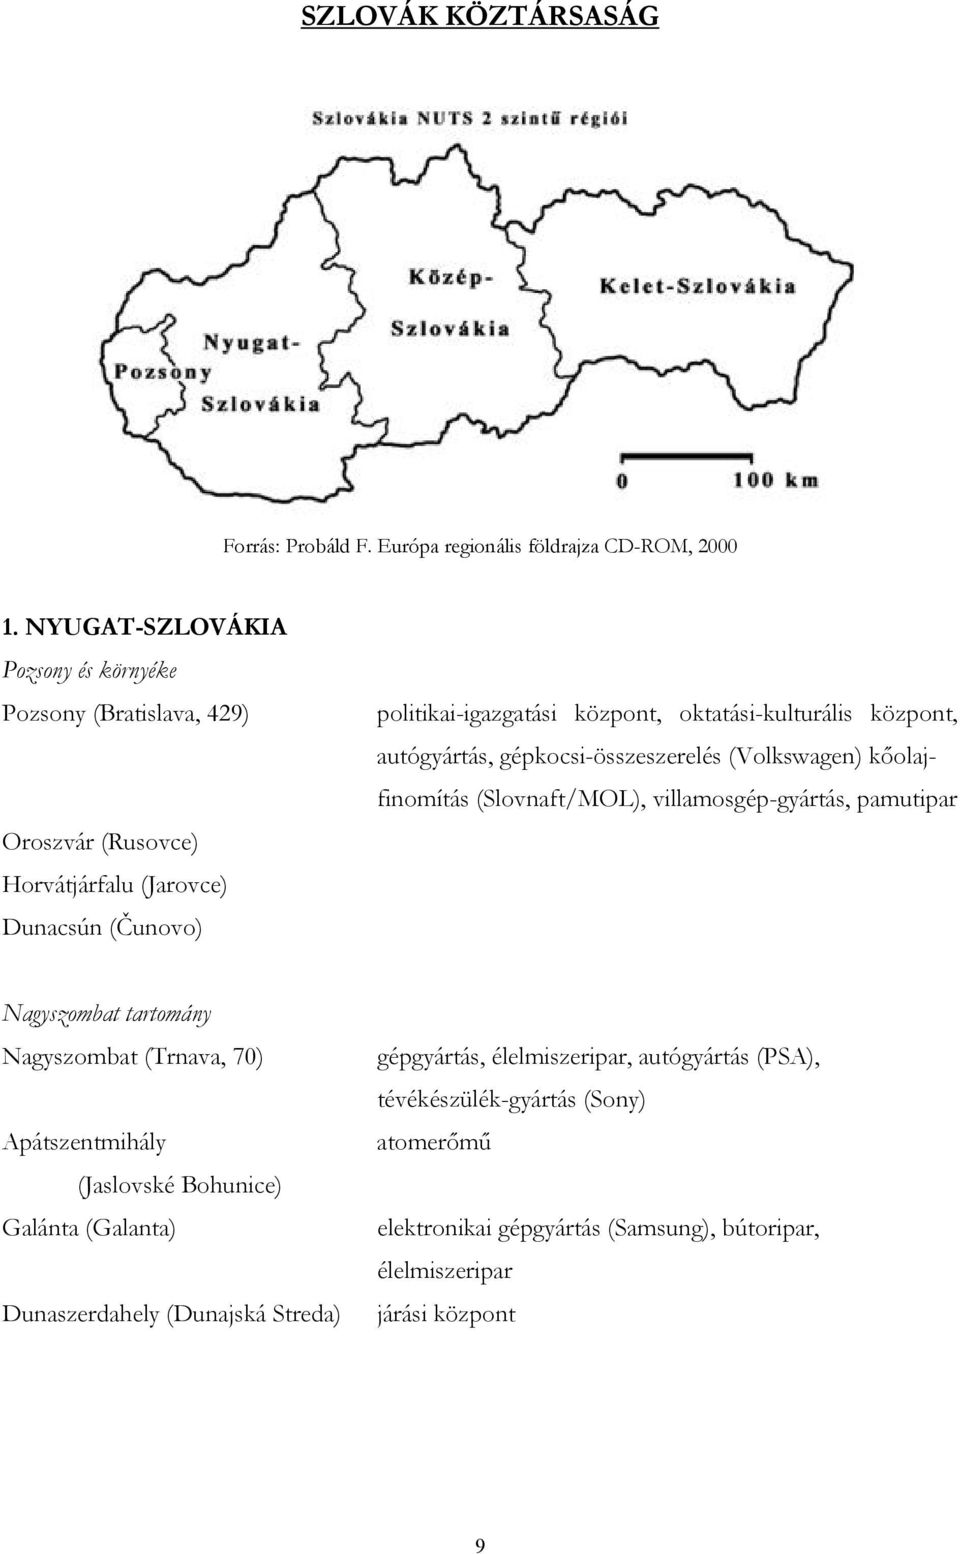 EURÓPA REGIONÁLIS TÁRSADALOMFÖLDRAJZA II. - PDF Ingyenes letöltés